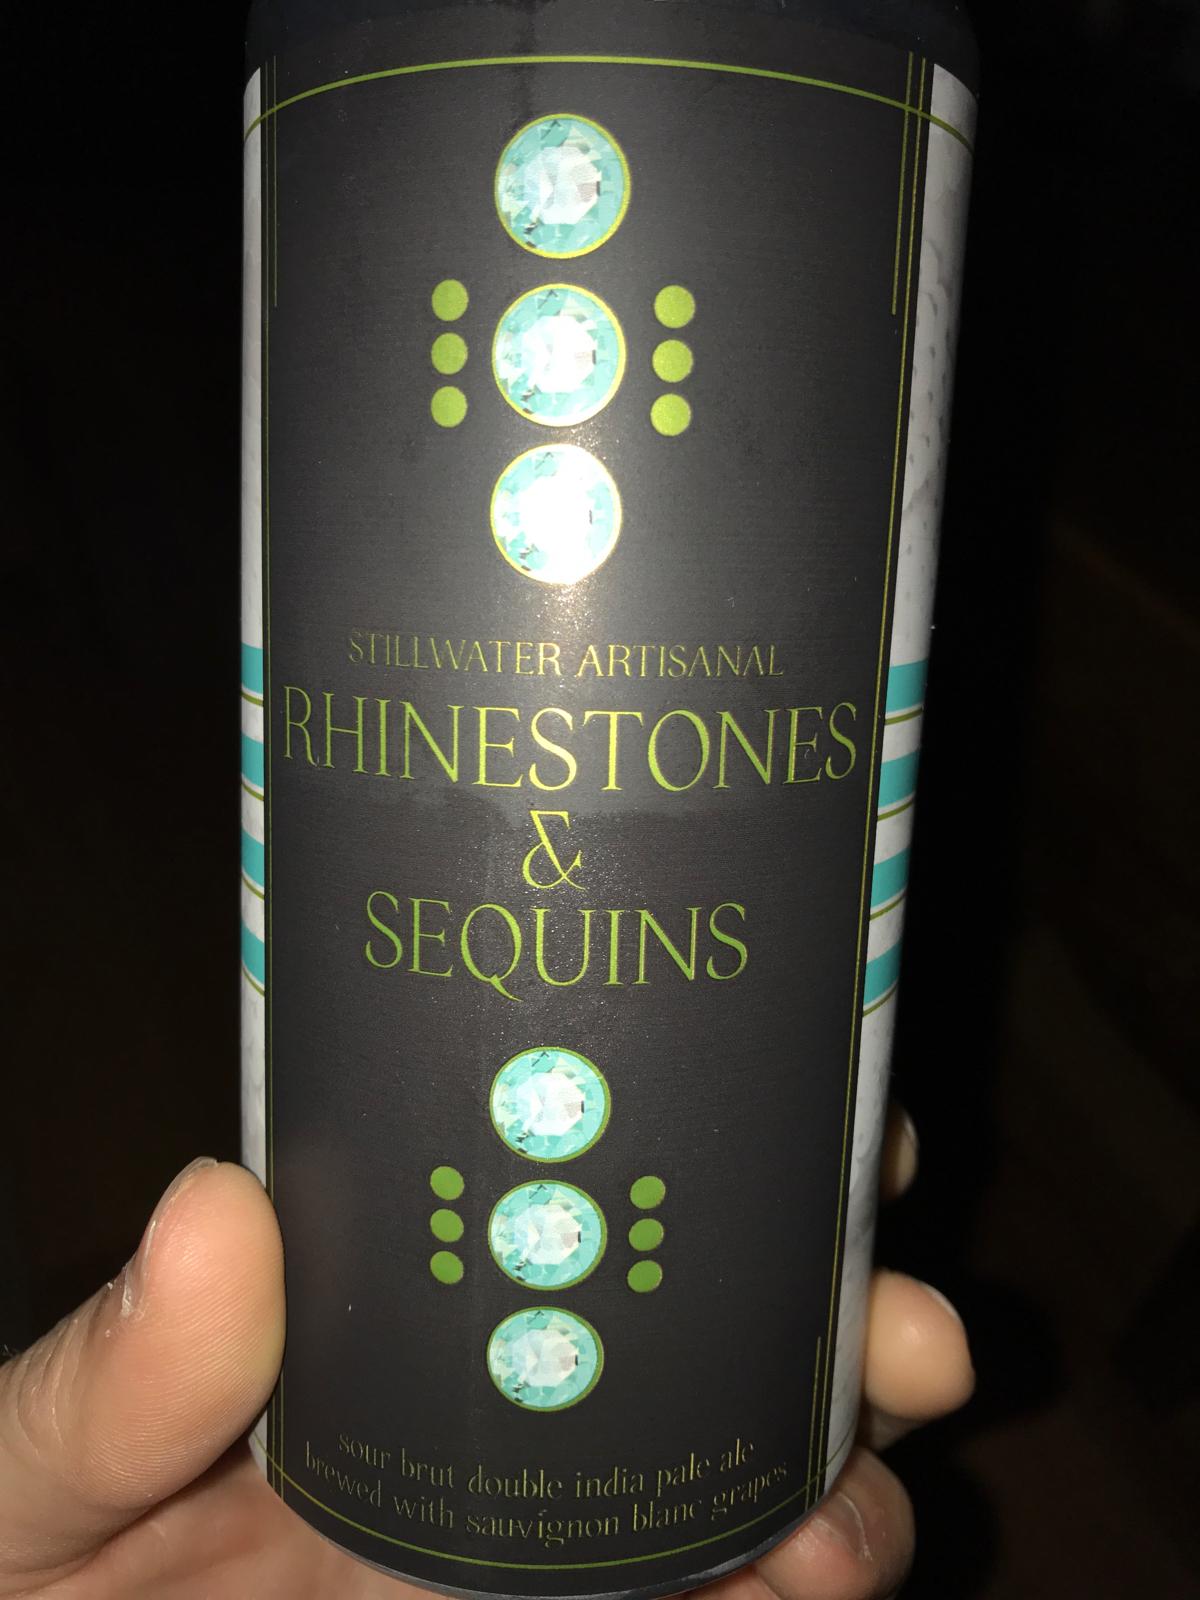 Rhinestones & Sequins